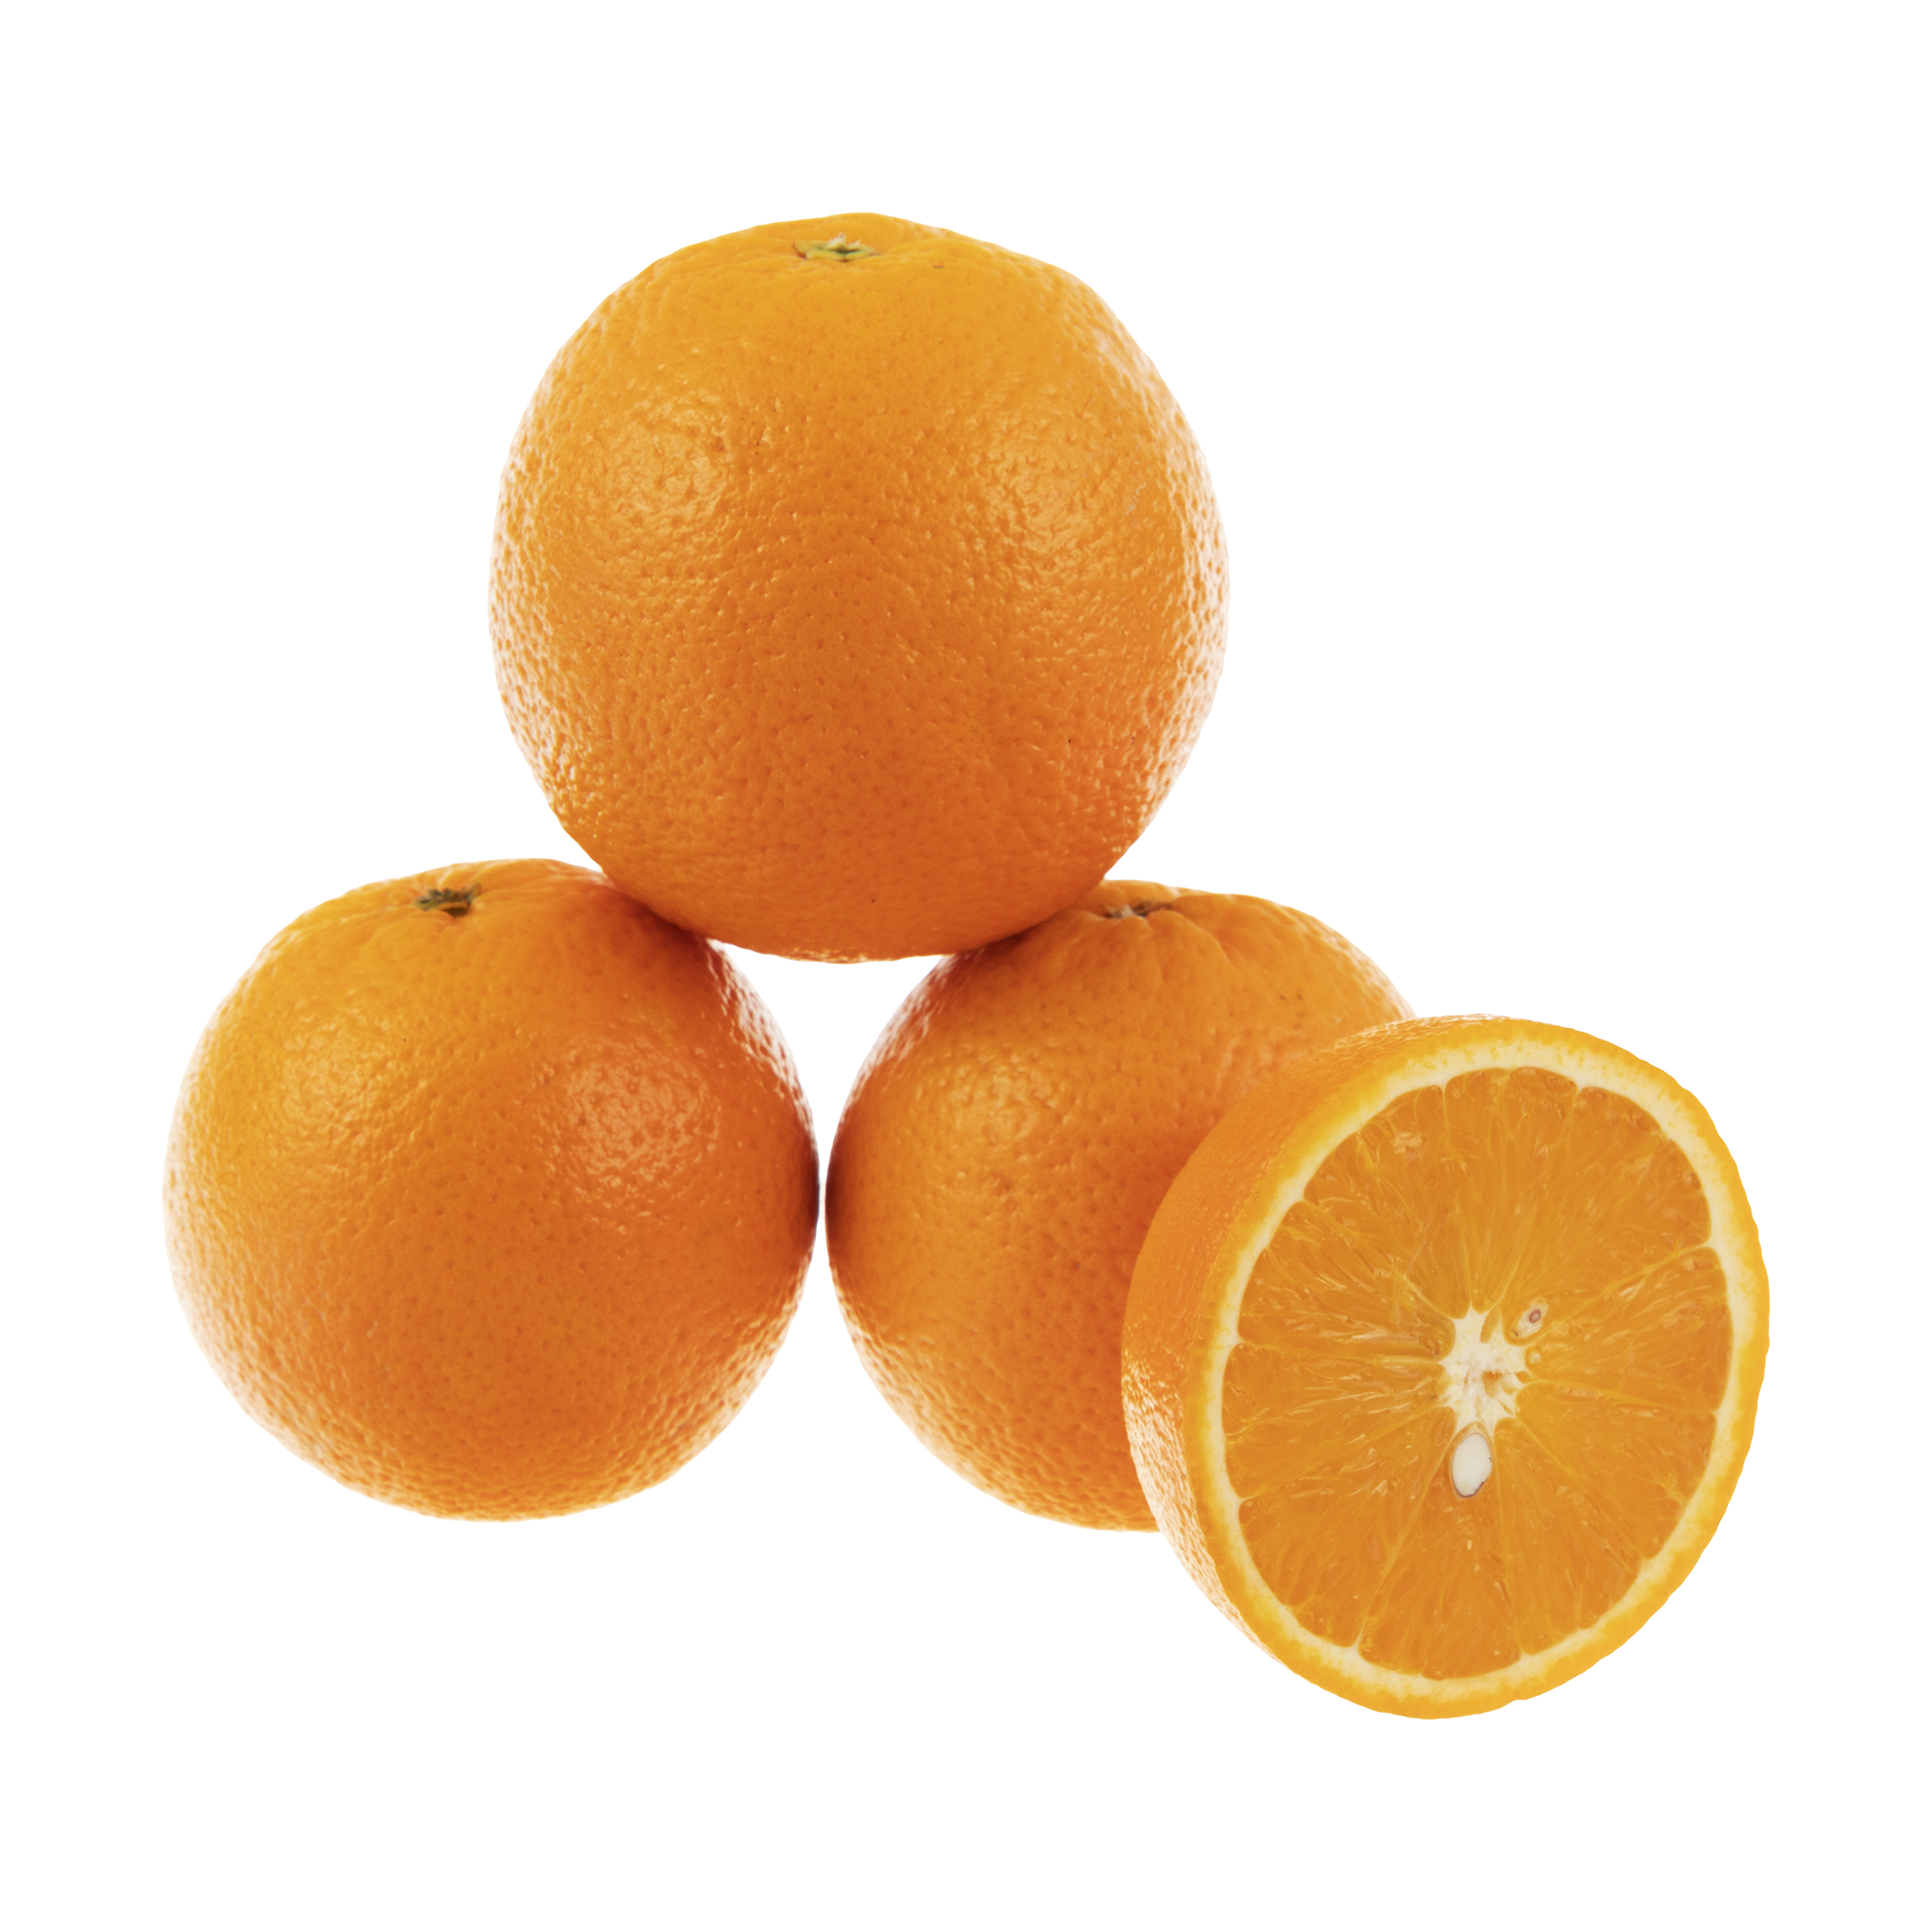 پرتقال والنسیا بلوط - 1 کیلوگرم 